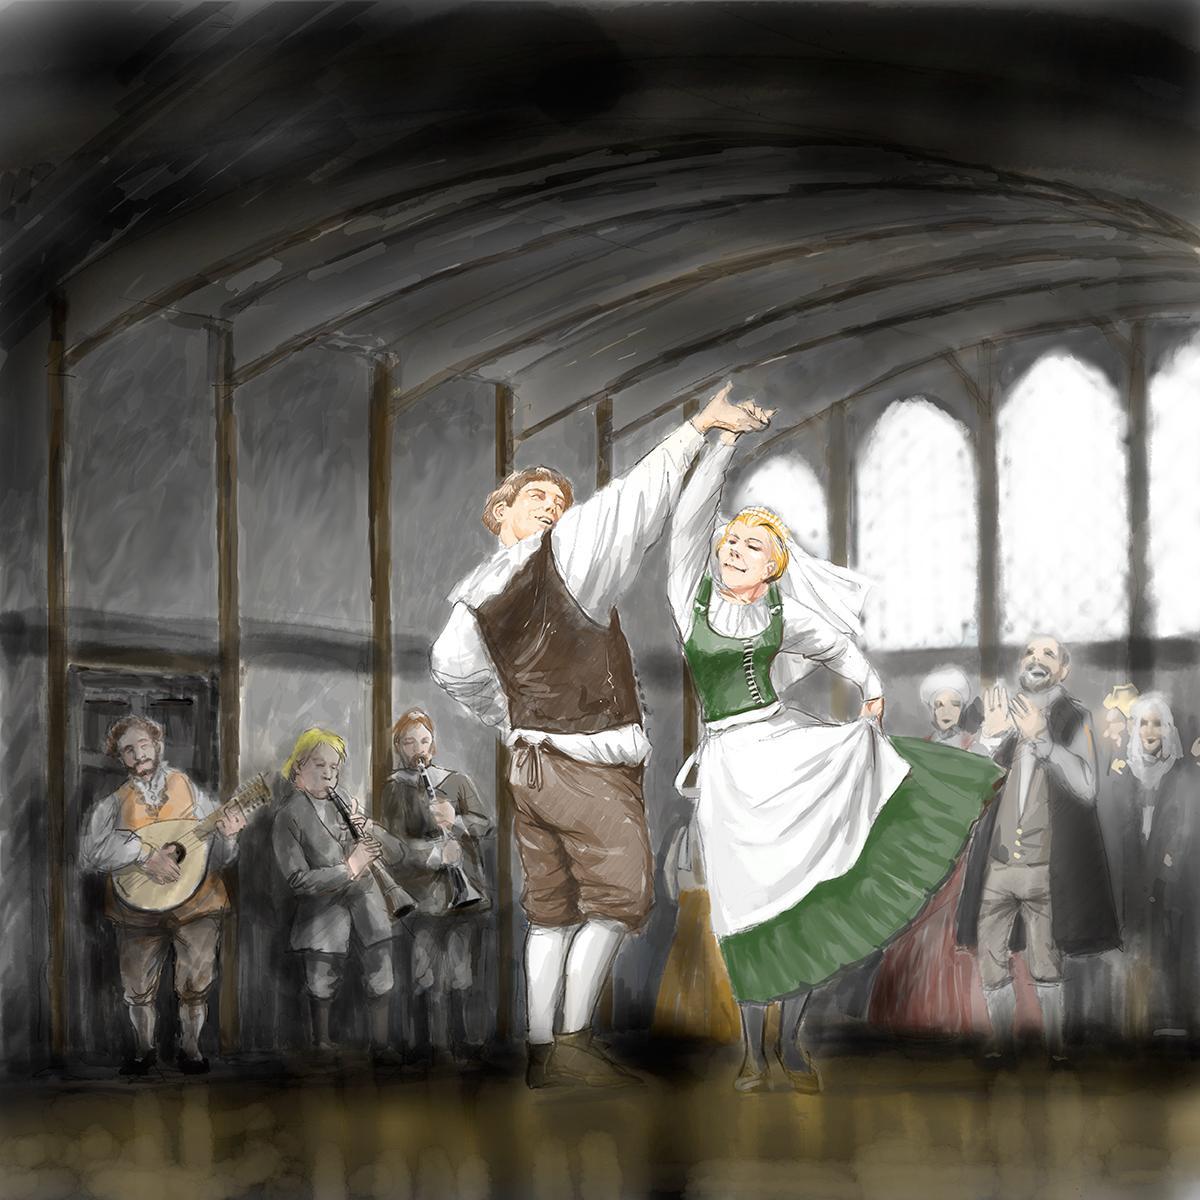 Martti Lutherin ja Katariina von Boran häitä tanssittiin Wittenbergin raatihuoneella kesällä 1525.